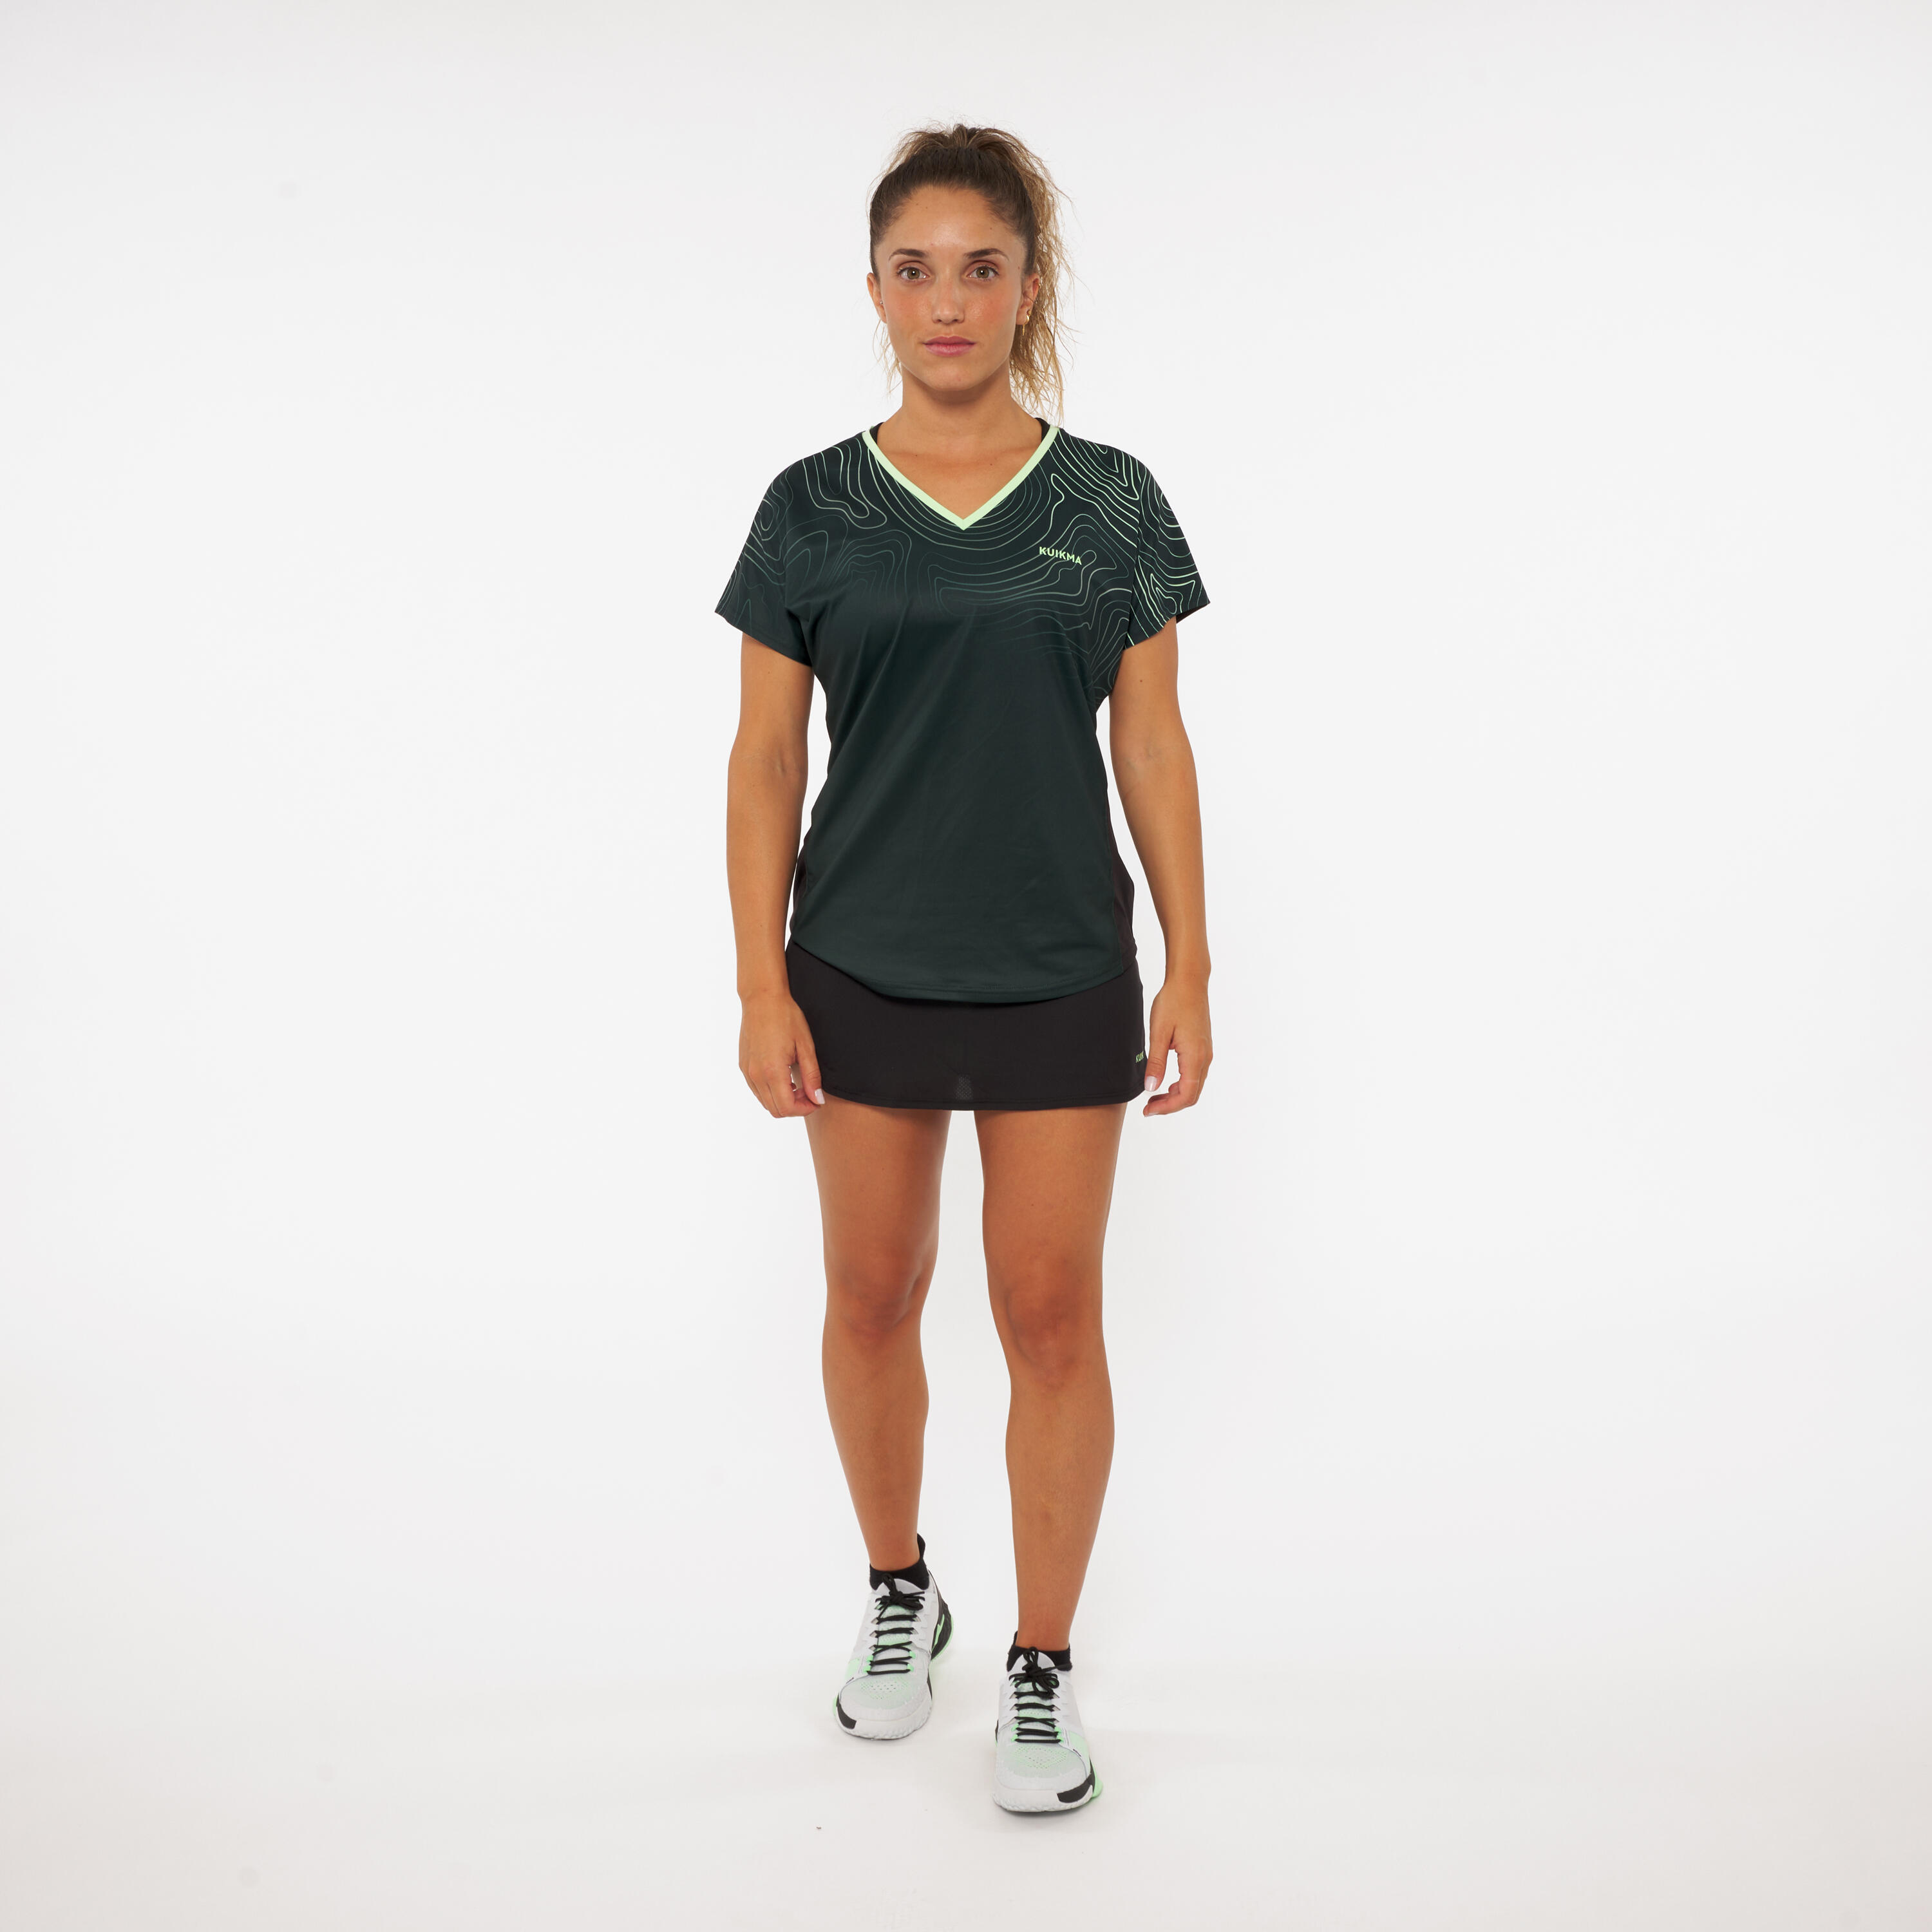 Women's Breathable Padel Skirt 500 - Green/Black 8/8